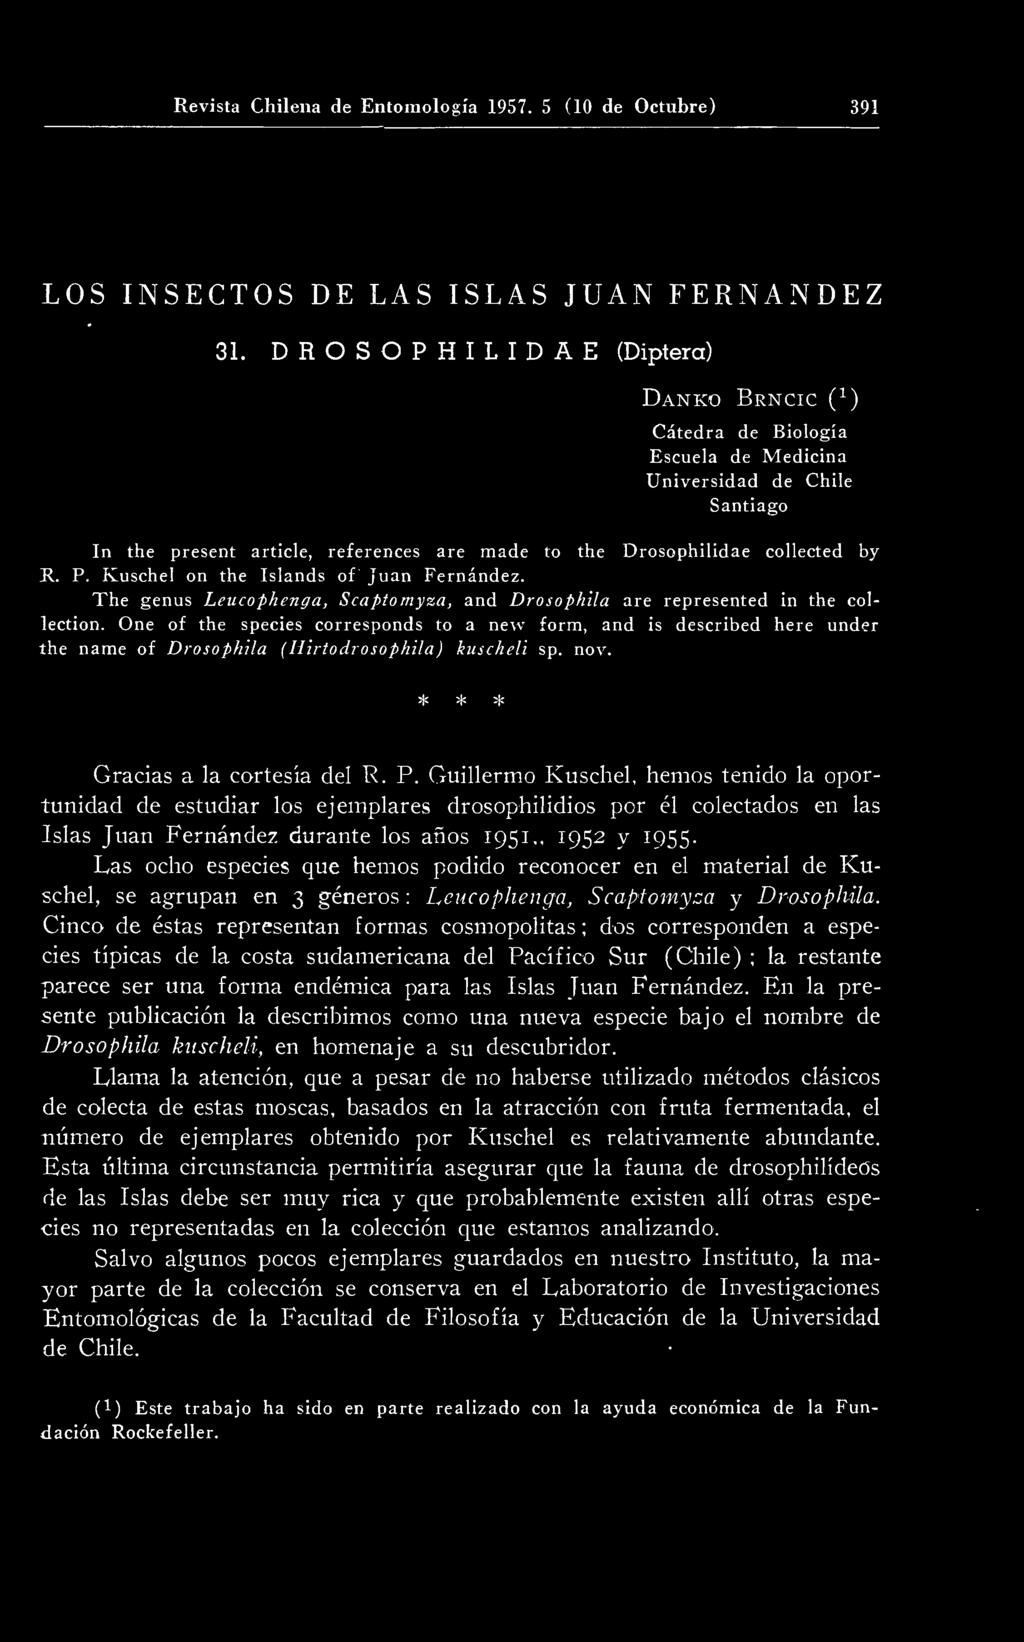 Guillermo Kuschel, hemos tenido la oportunidad de estudiar los ejemplares drosophilidios por él colectados en las Islas Juan Fernández durante los años 1951,, 1952 y 1955.